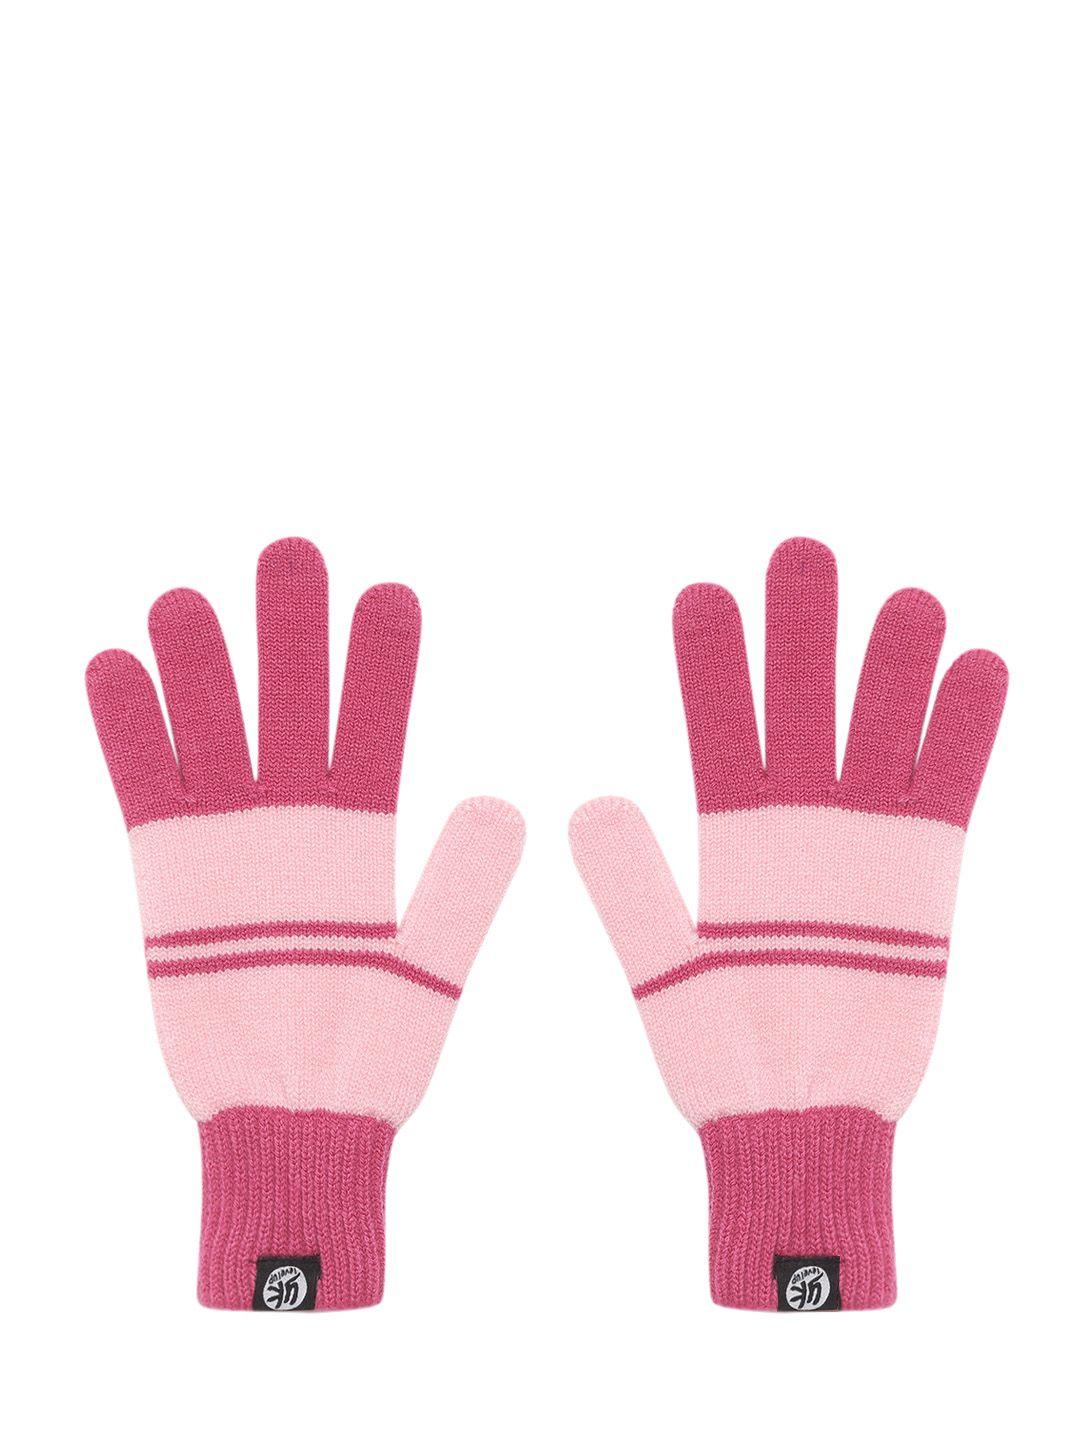 yk kids pink striped gloves